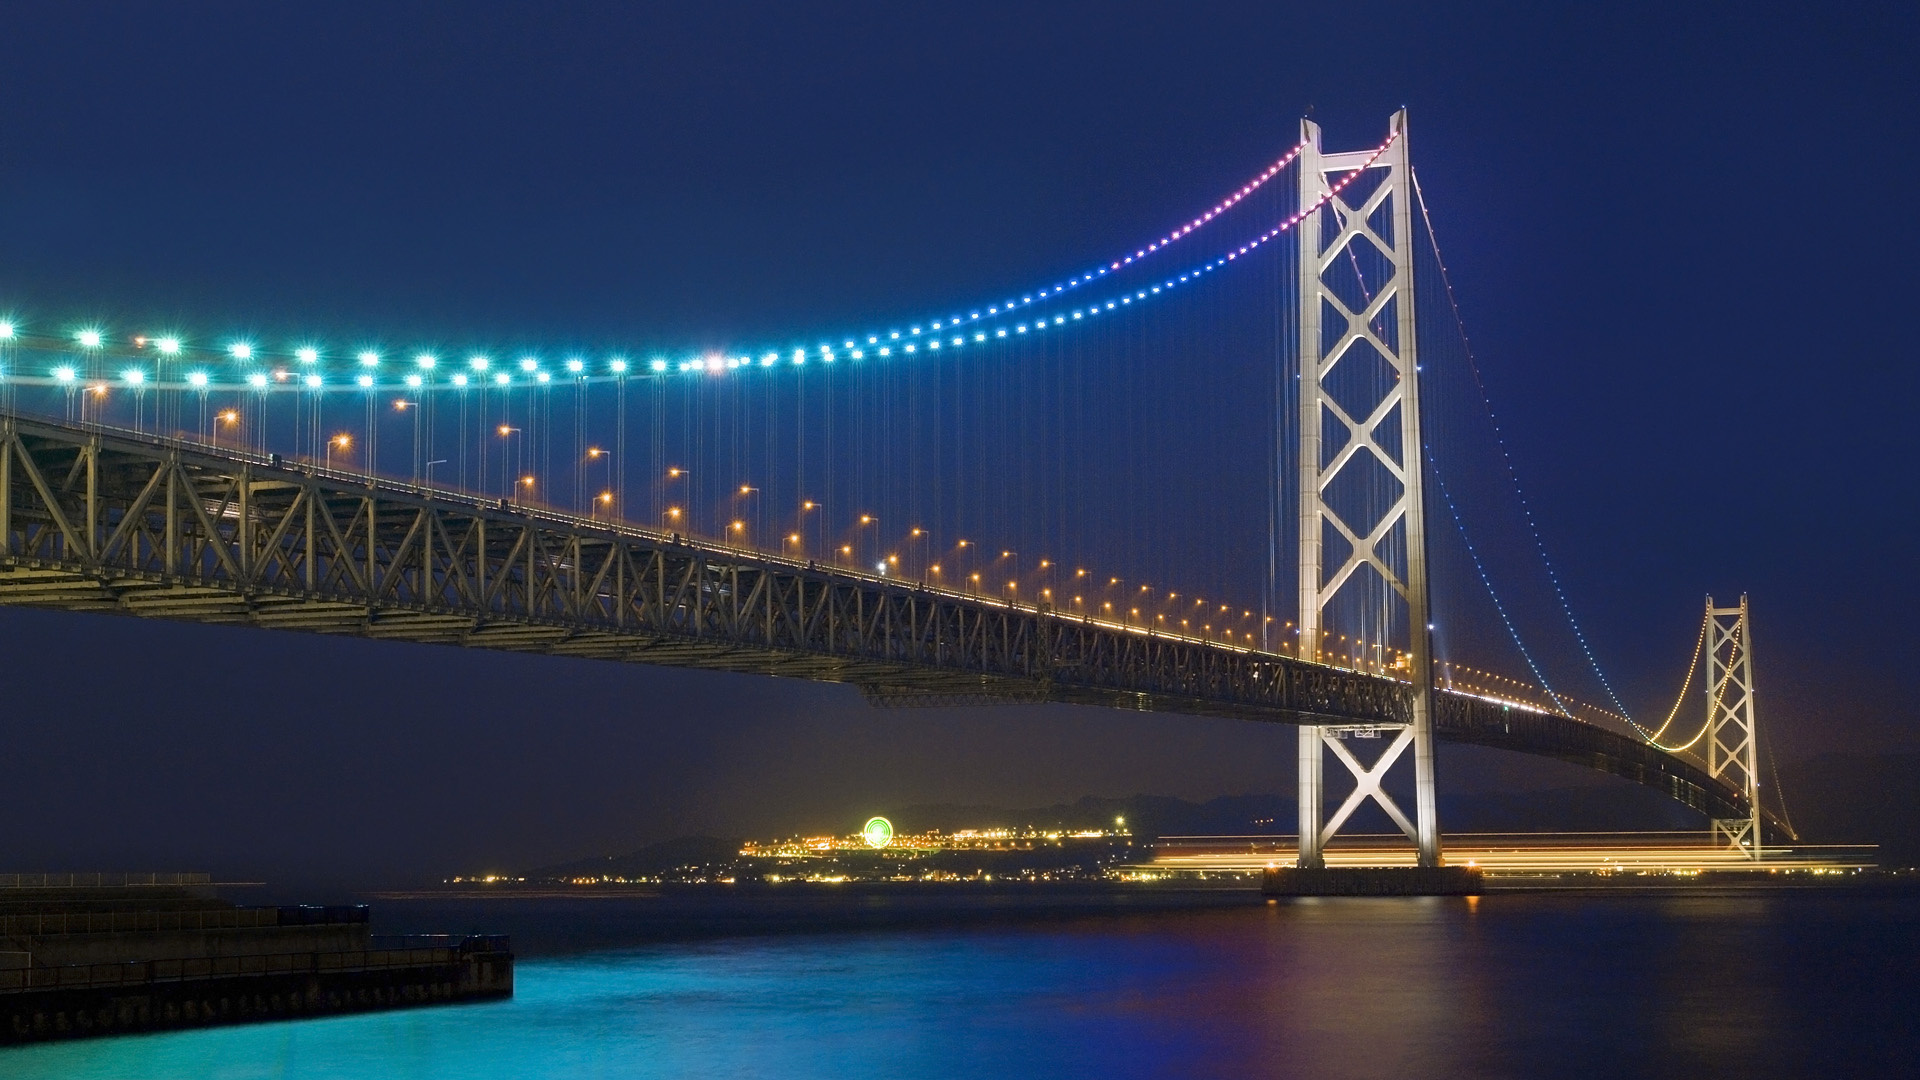 Amazing Akashi Kaikyo Bridge Pictures & Backgrounds